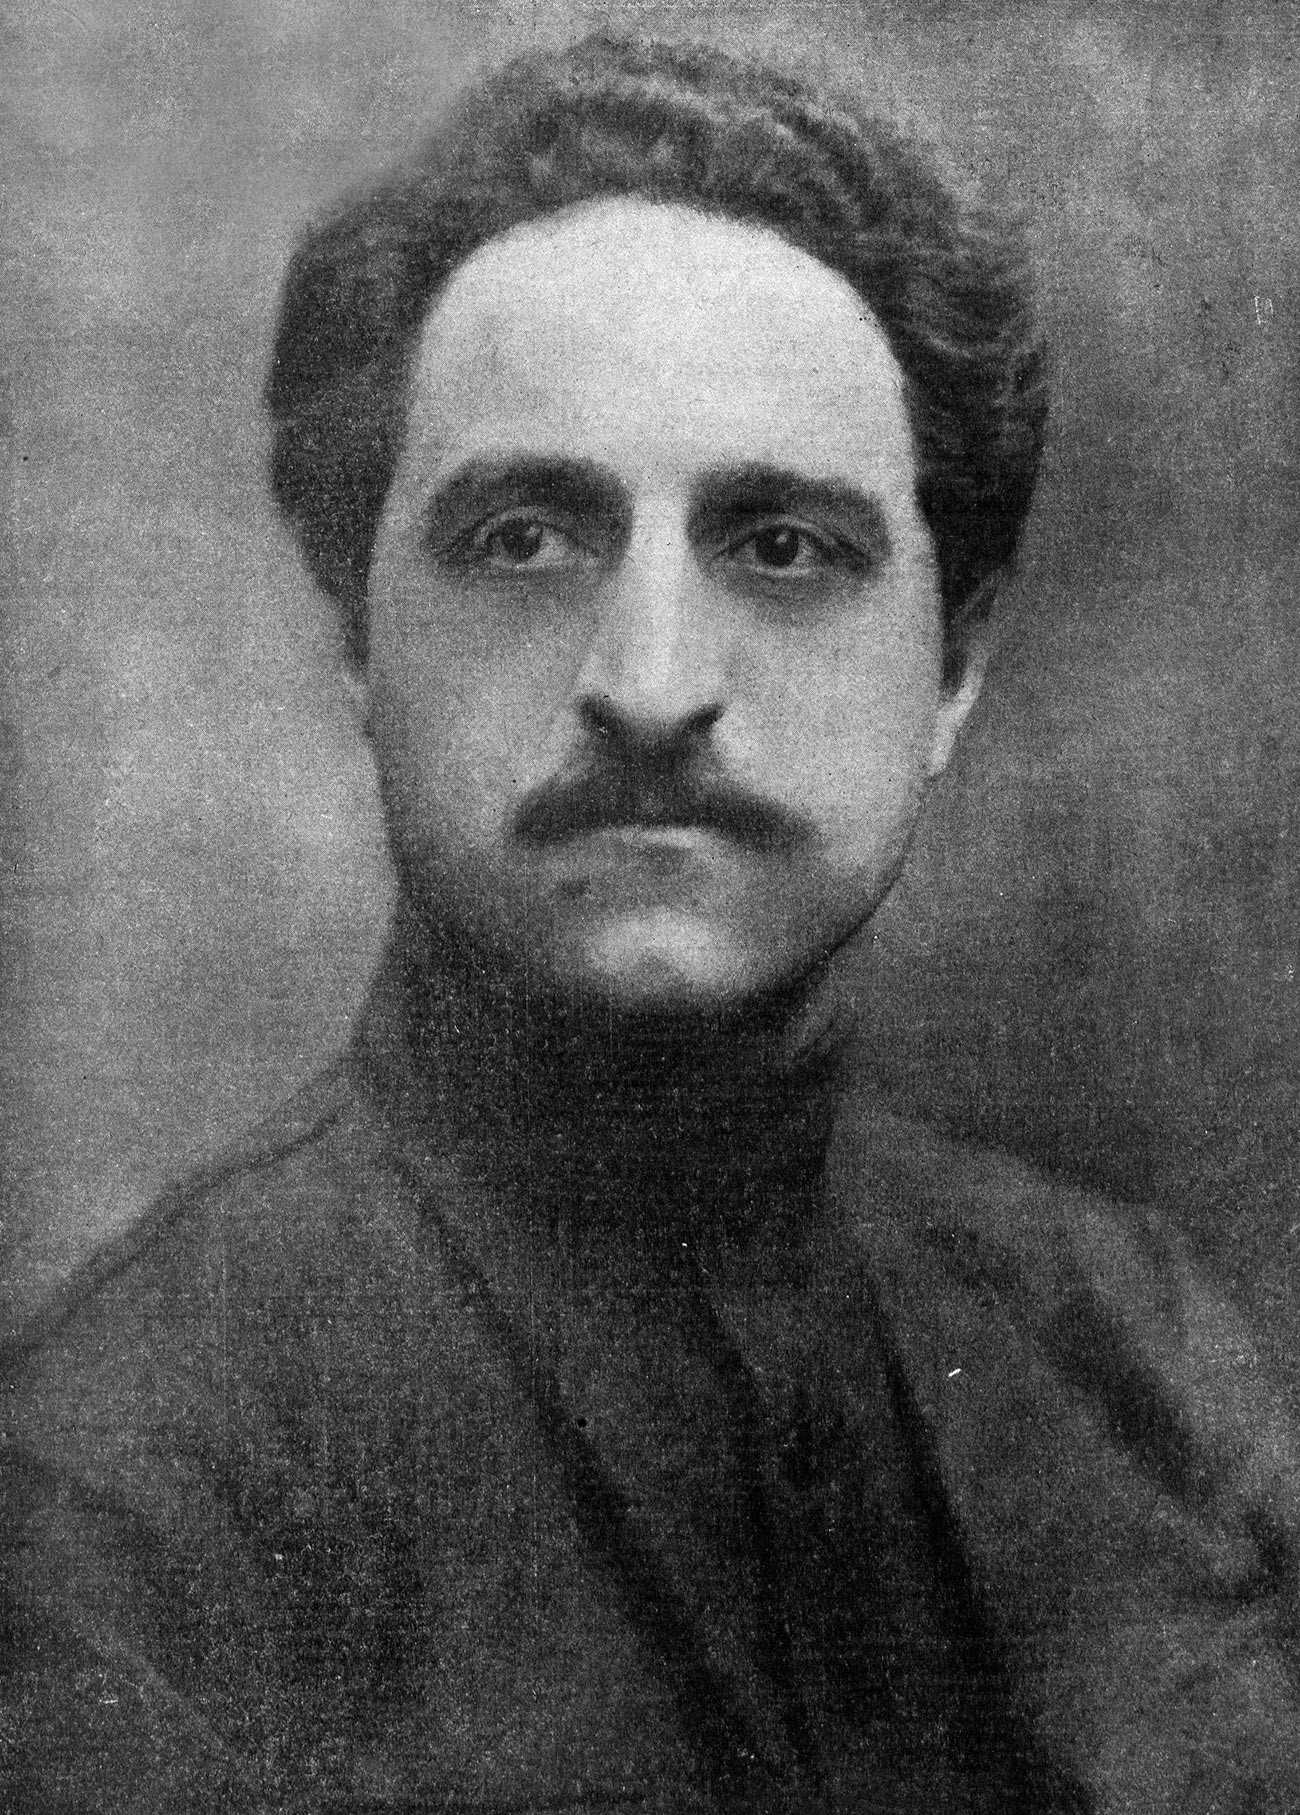 Sergo Ordžonikidze (1886-1937)